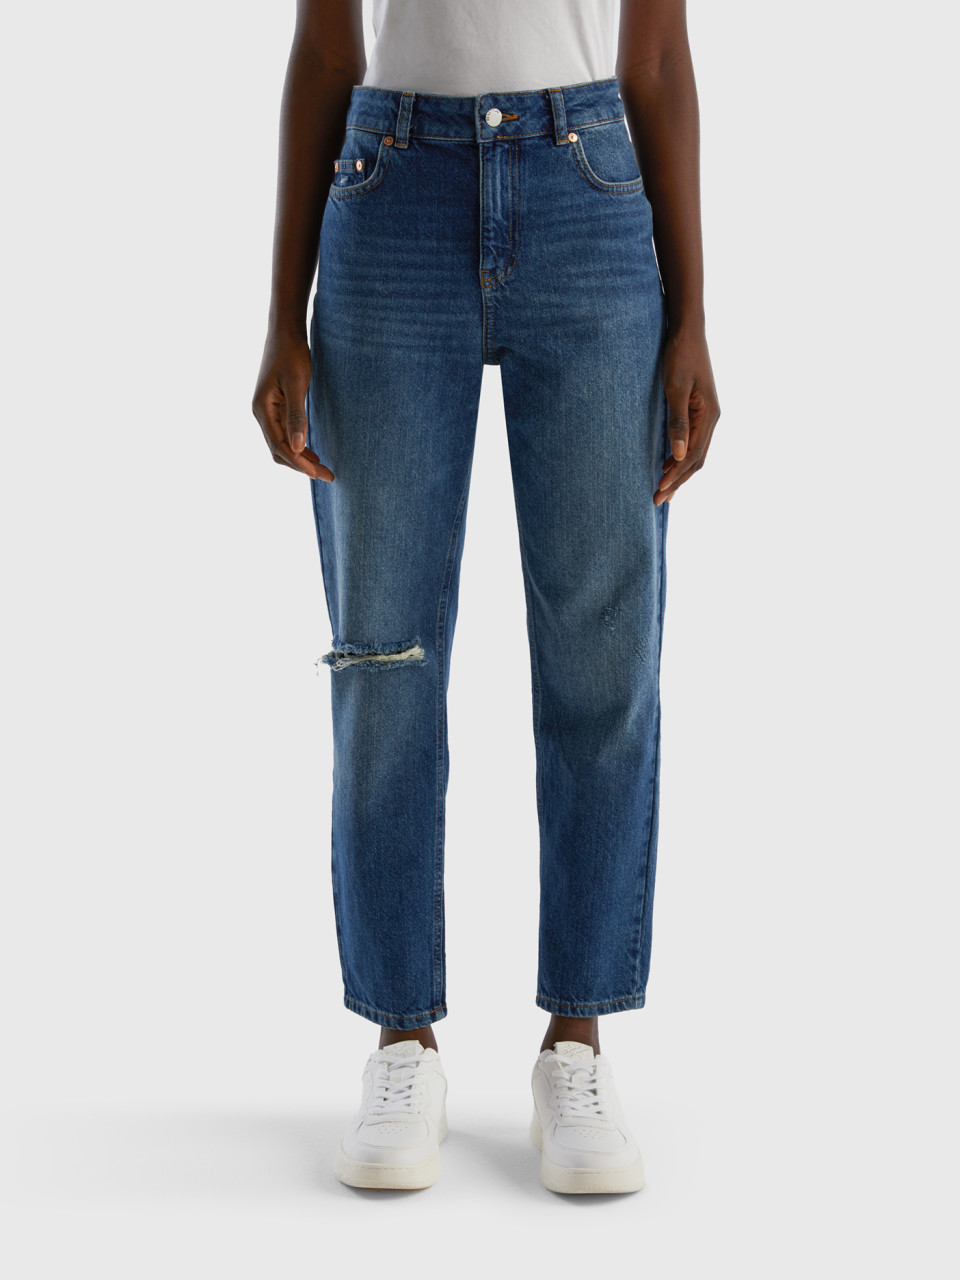 Benetton, Jeans Cropped Taille Haute, Bleu Foncé, Femme